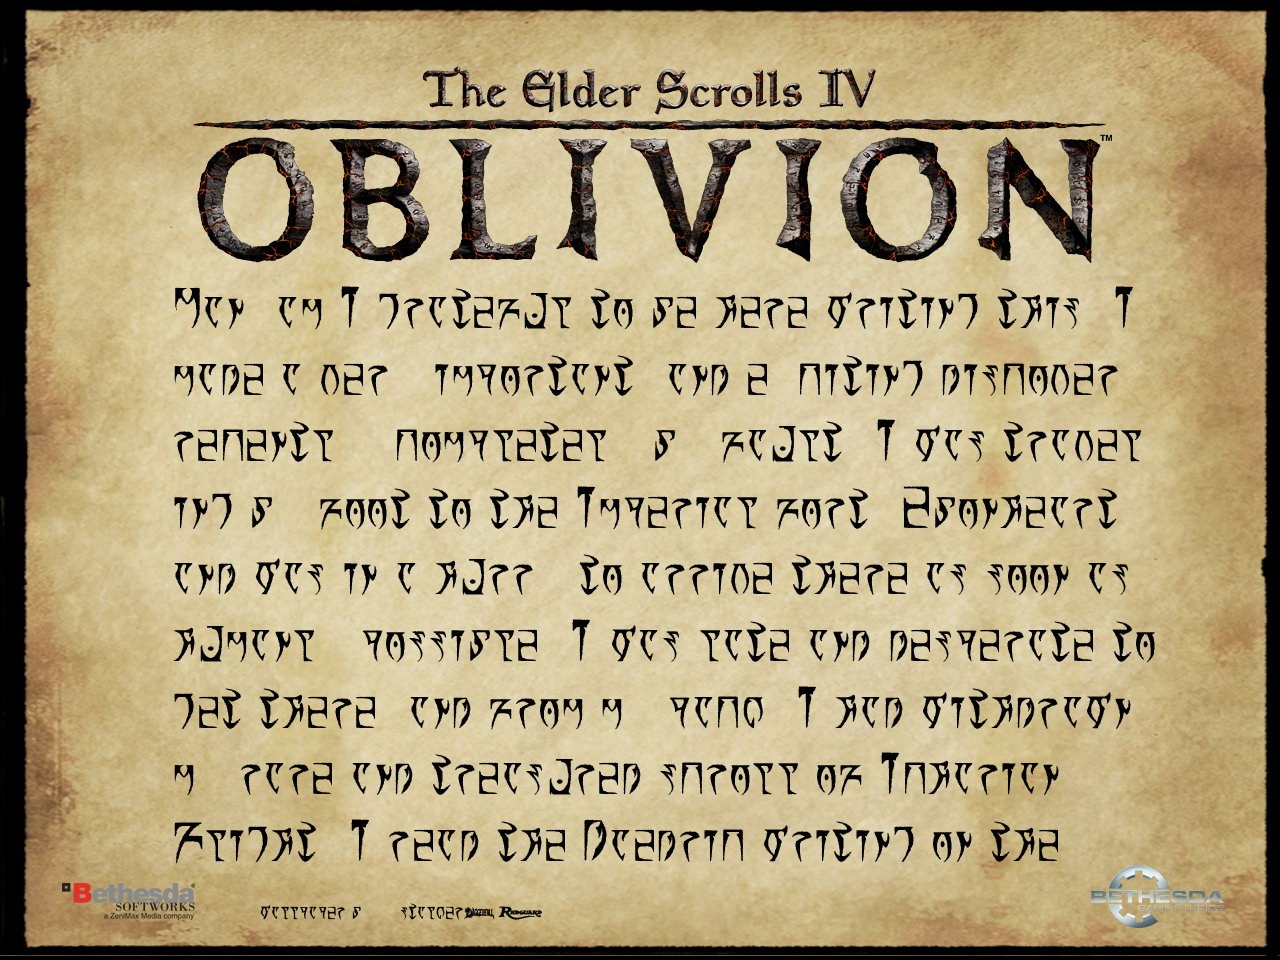 video game, the elder scrolls iv: oblivion